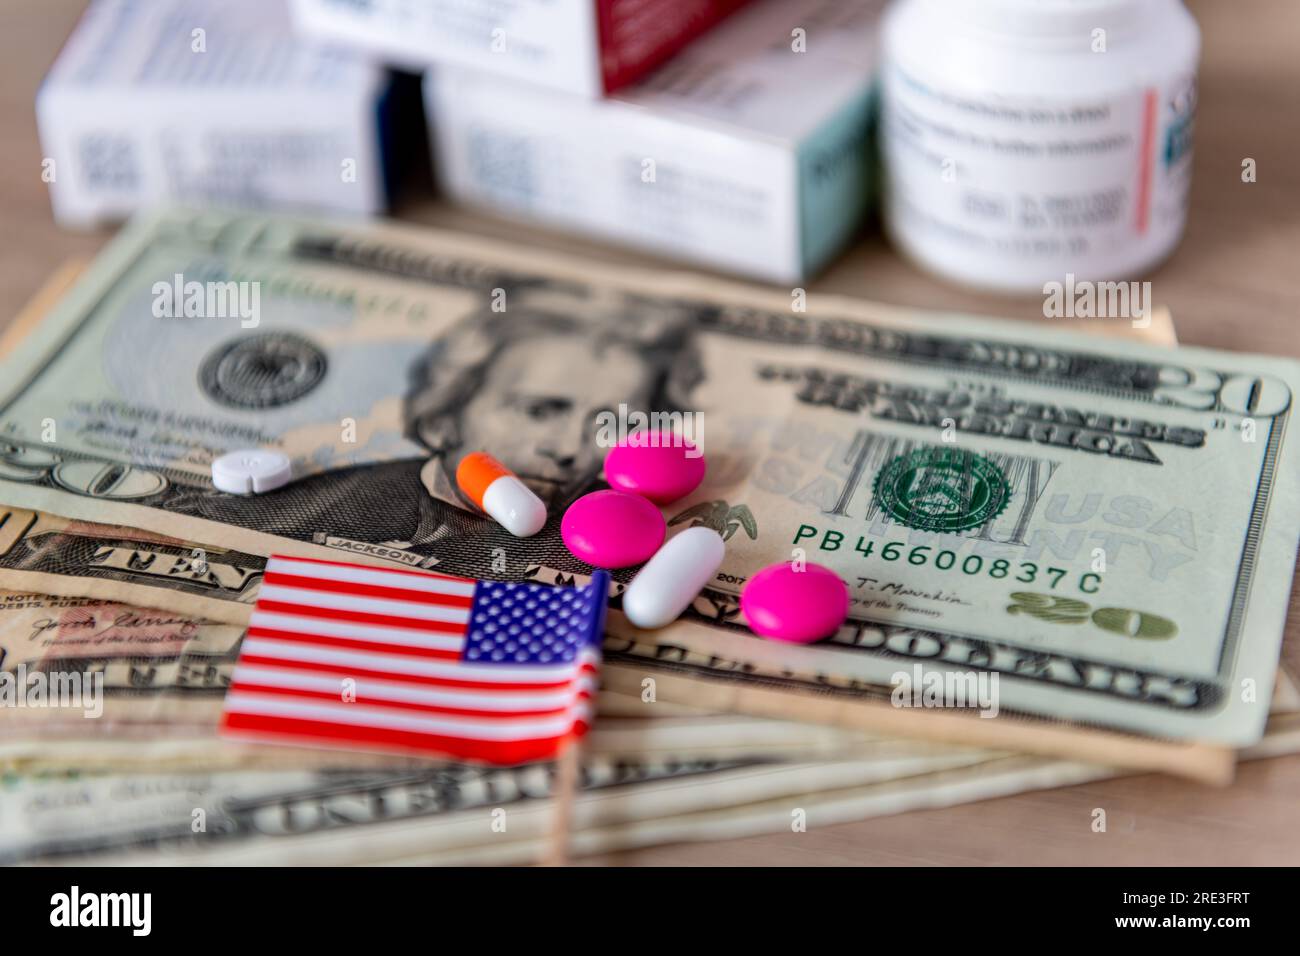 Un costo medico, un grande concetto farmaceutico con un bicchiere d'acqua, varie medicine, banconote in dollari americani e la bandiera americana. Foto Stock